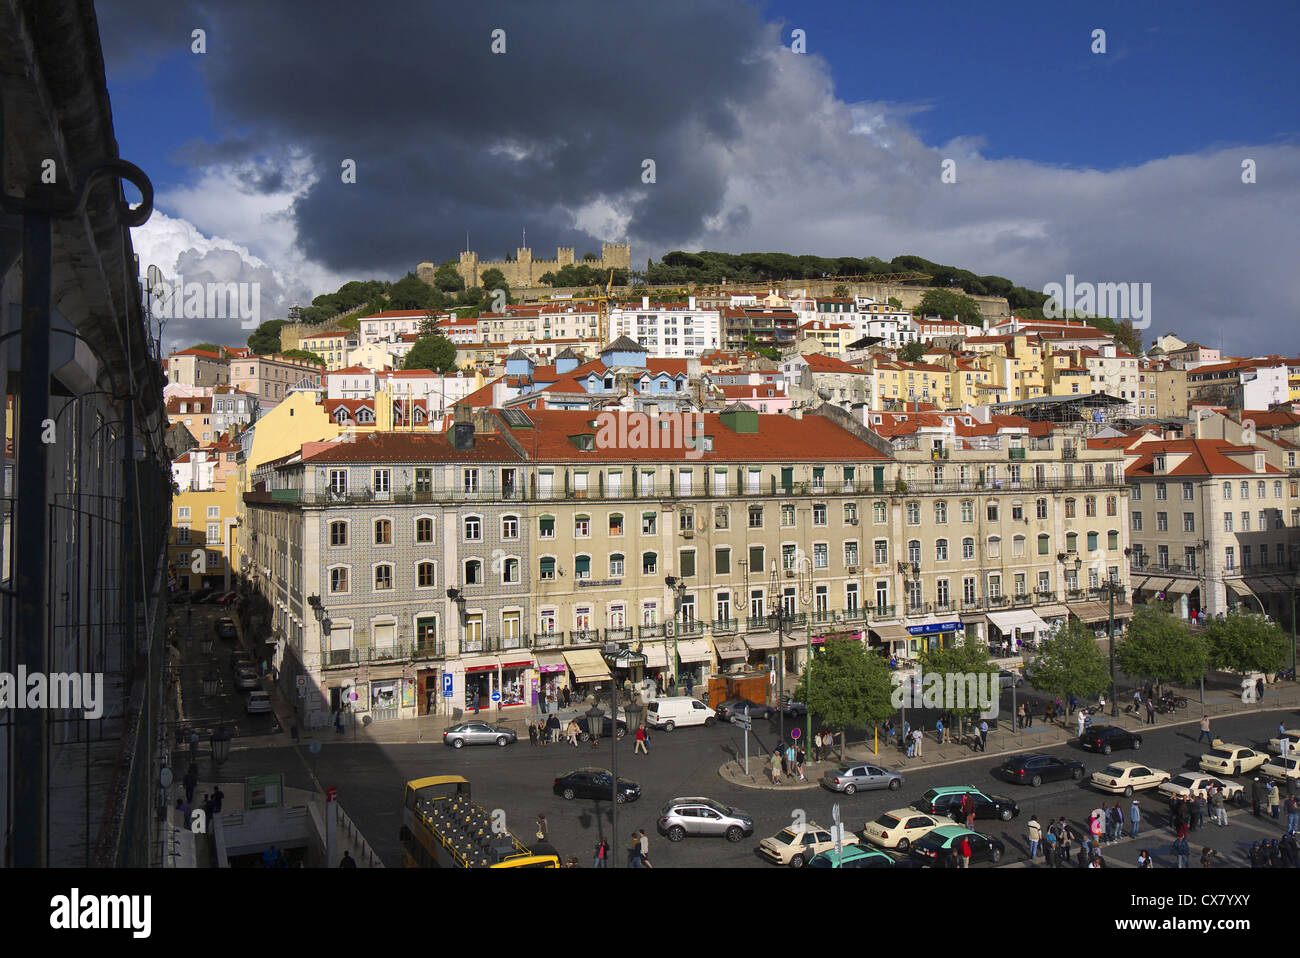 Praca da Figueira mit Castelo Sao Jorge oben in Lissabon, Portugal. Stockfoto